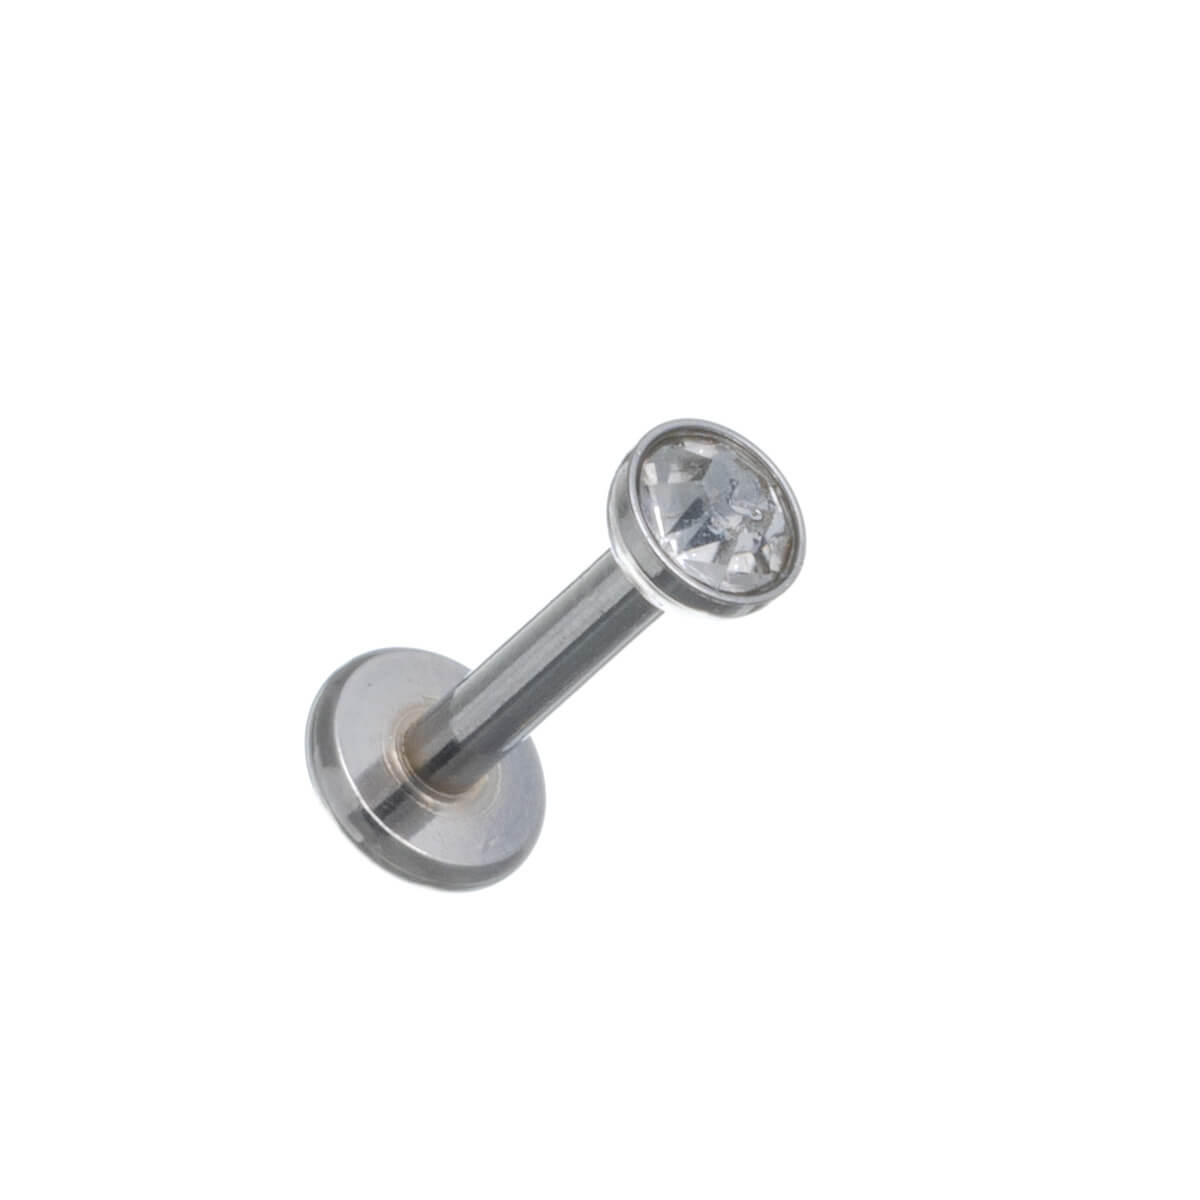 Fint labret-läpprör 1,2 mm (stål 316L)